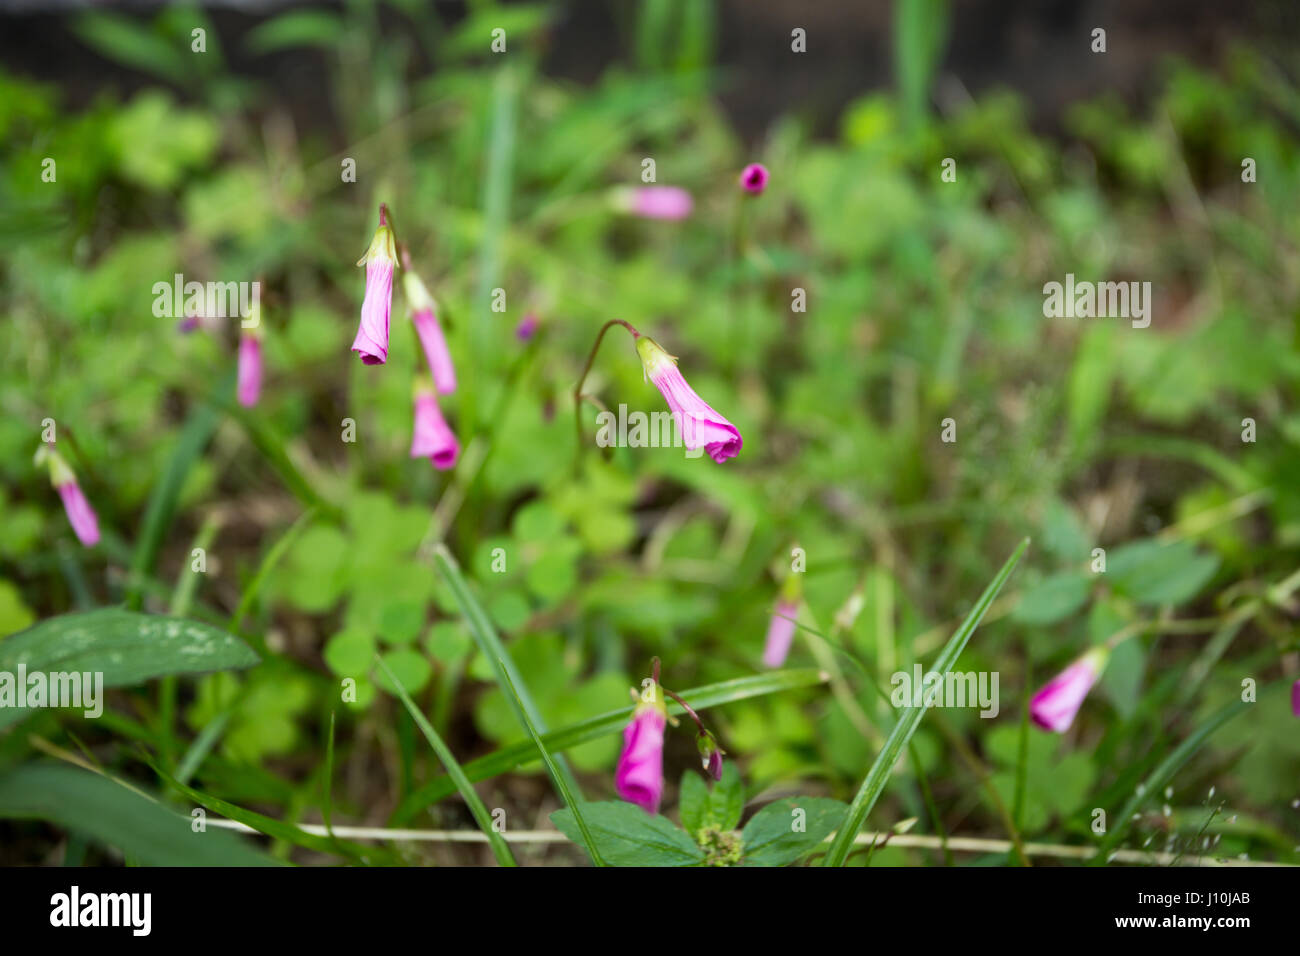 Legno di rosa sorrel (Oxalis Articulata) fiori vicino durante il giorno nuvoloso in Asuncion in Paraguay. Legno di rosa sorrel entrambi i fiori e foglie hanno la capacità di rispondere con movimenti (noto come movimenti nyctinastic) - dispiegamento o apertura - per le condizioni di luce e oscurità o di temperatura. Foto Stock